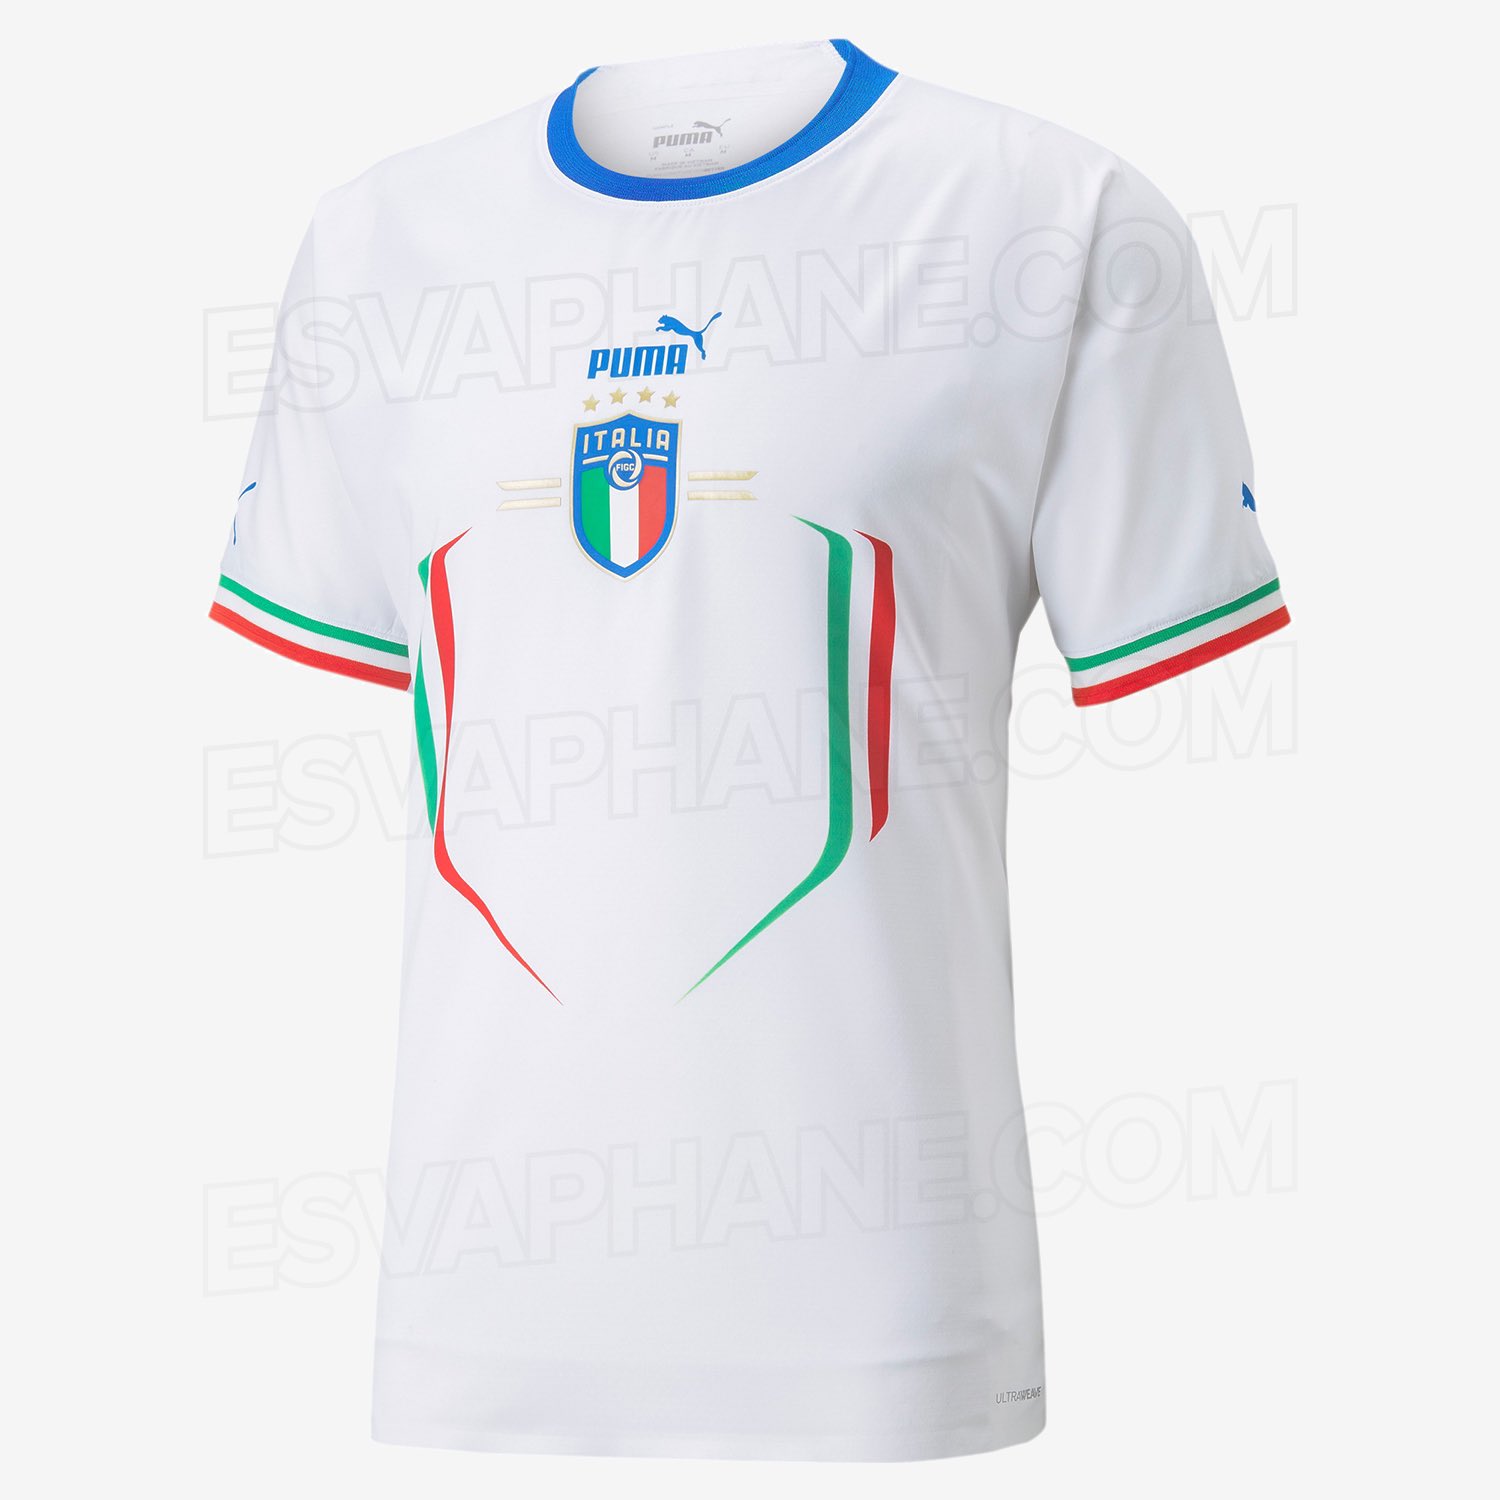 Italie 2022 nouveau maillot de foot exterieur